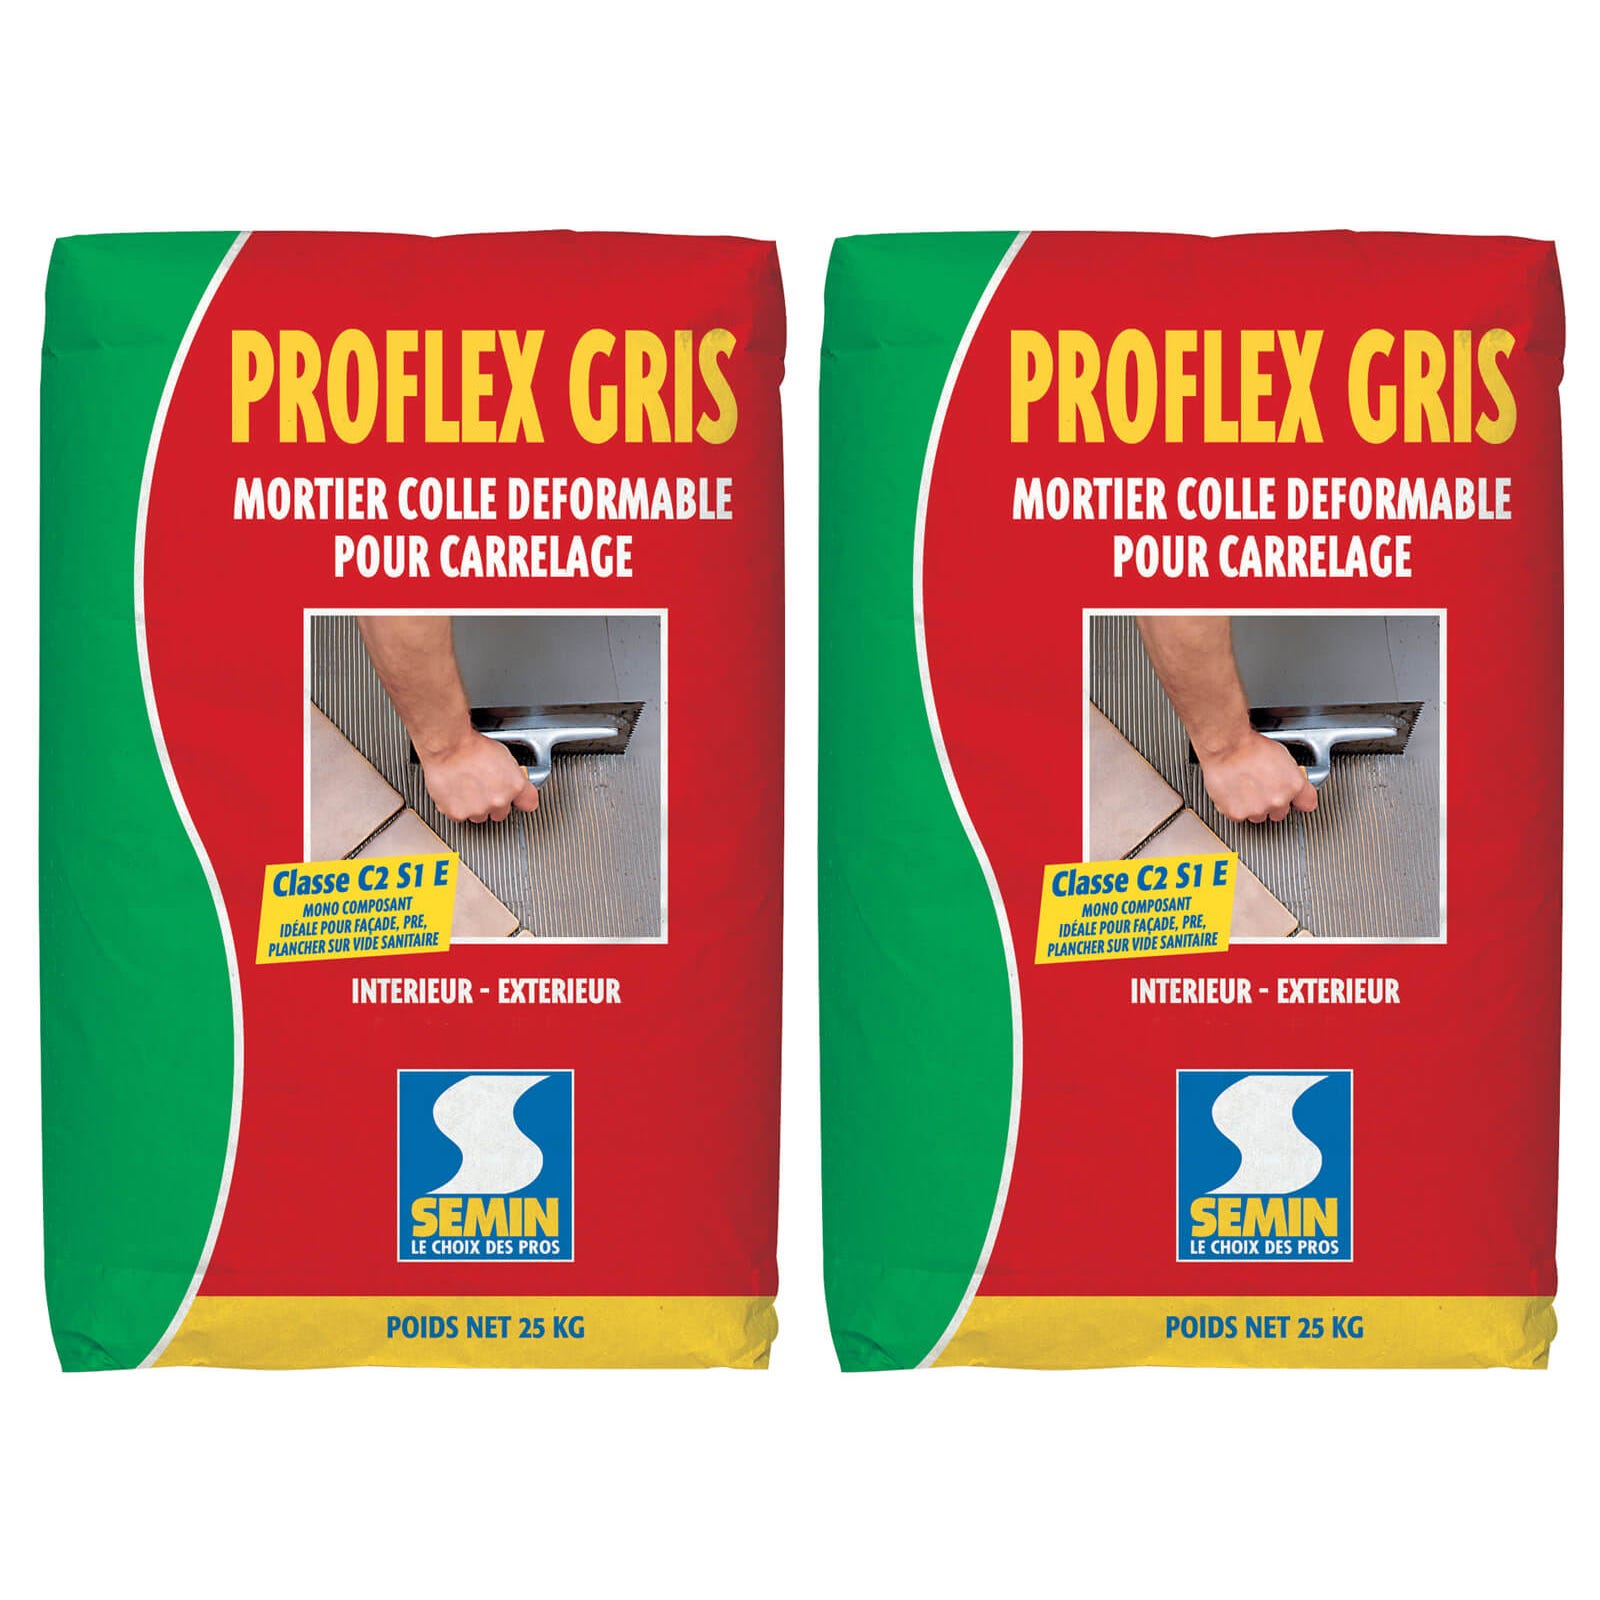 Mortier Colle Déformable pour Carrelage Proflex Gris Semin, Intérieur/Extérieur, sac de 25 kg (lot de 2) 0